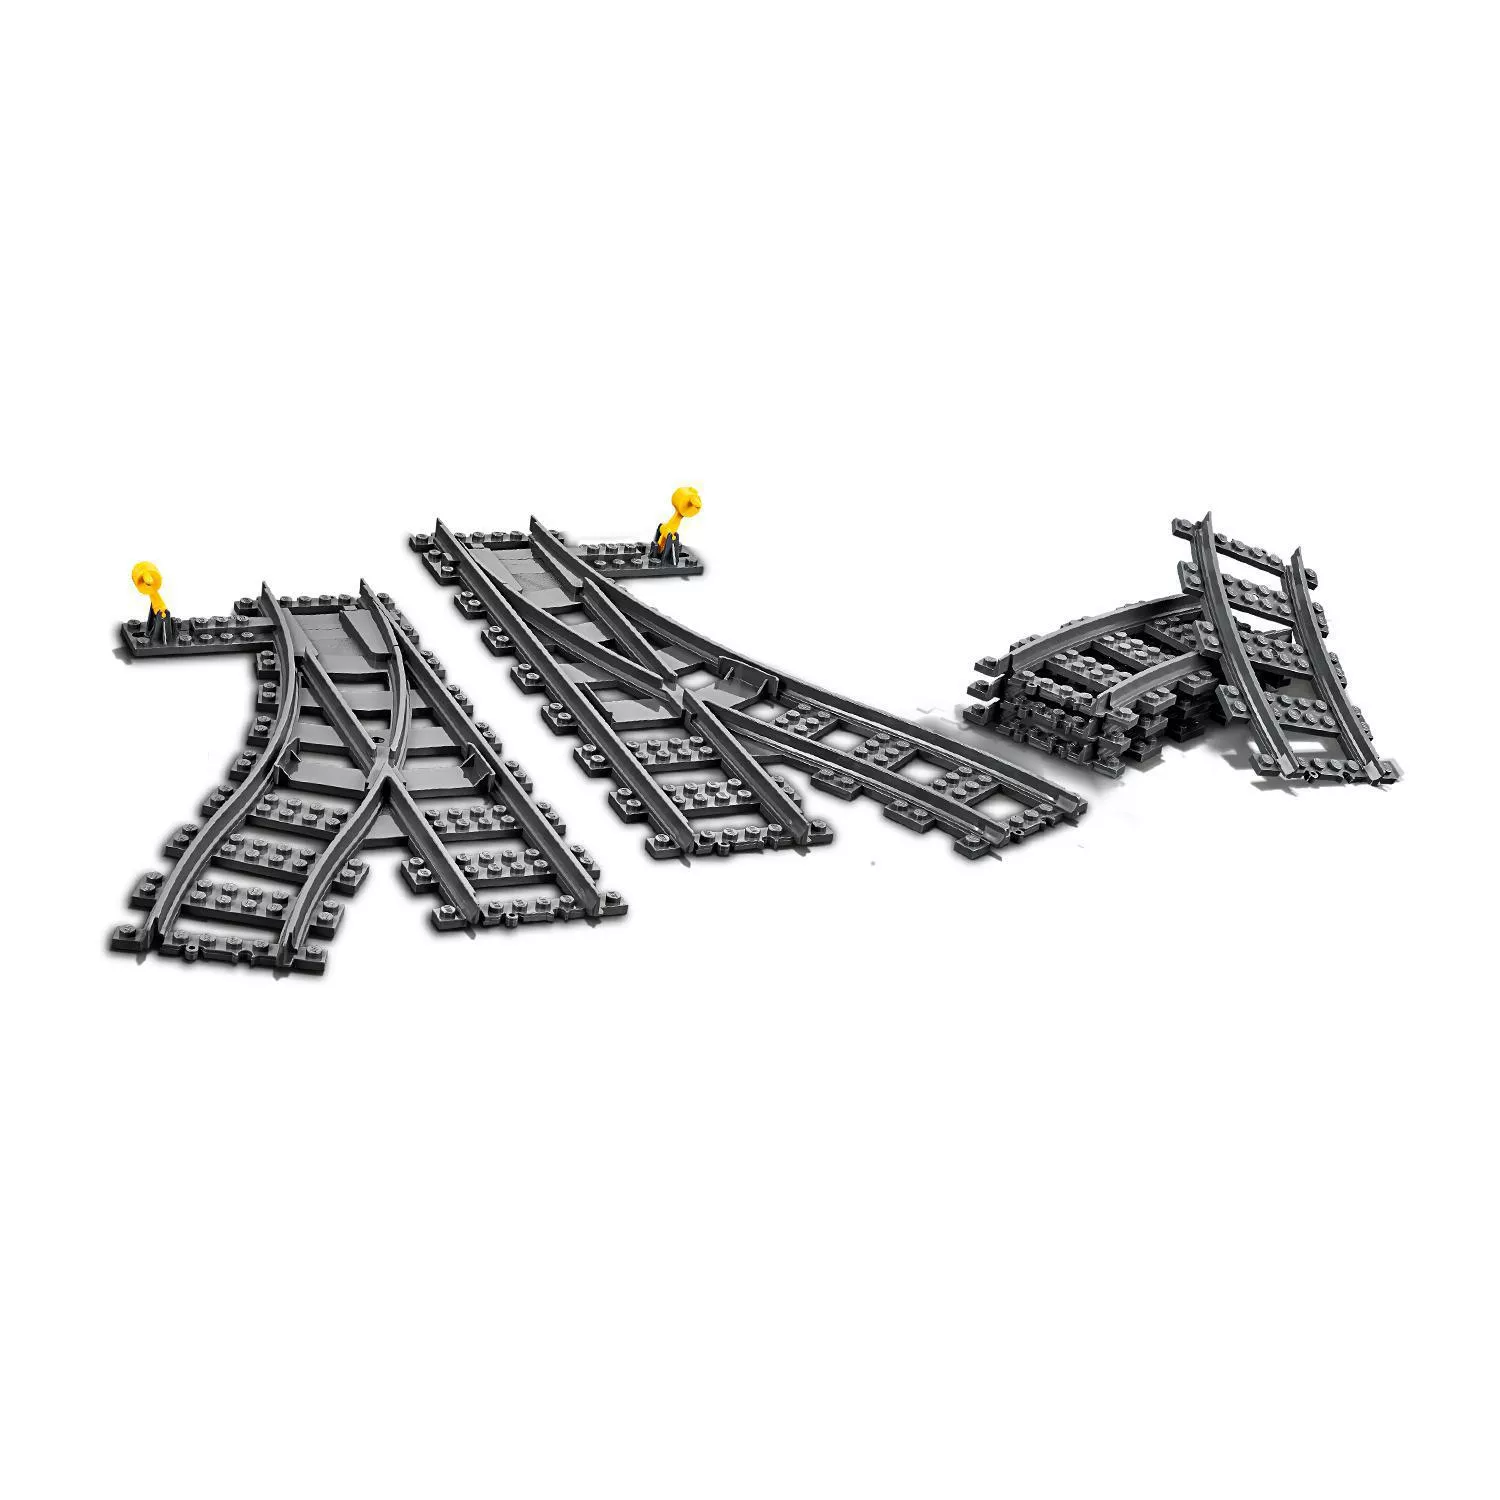 LEGO City Weichen